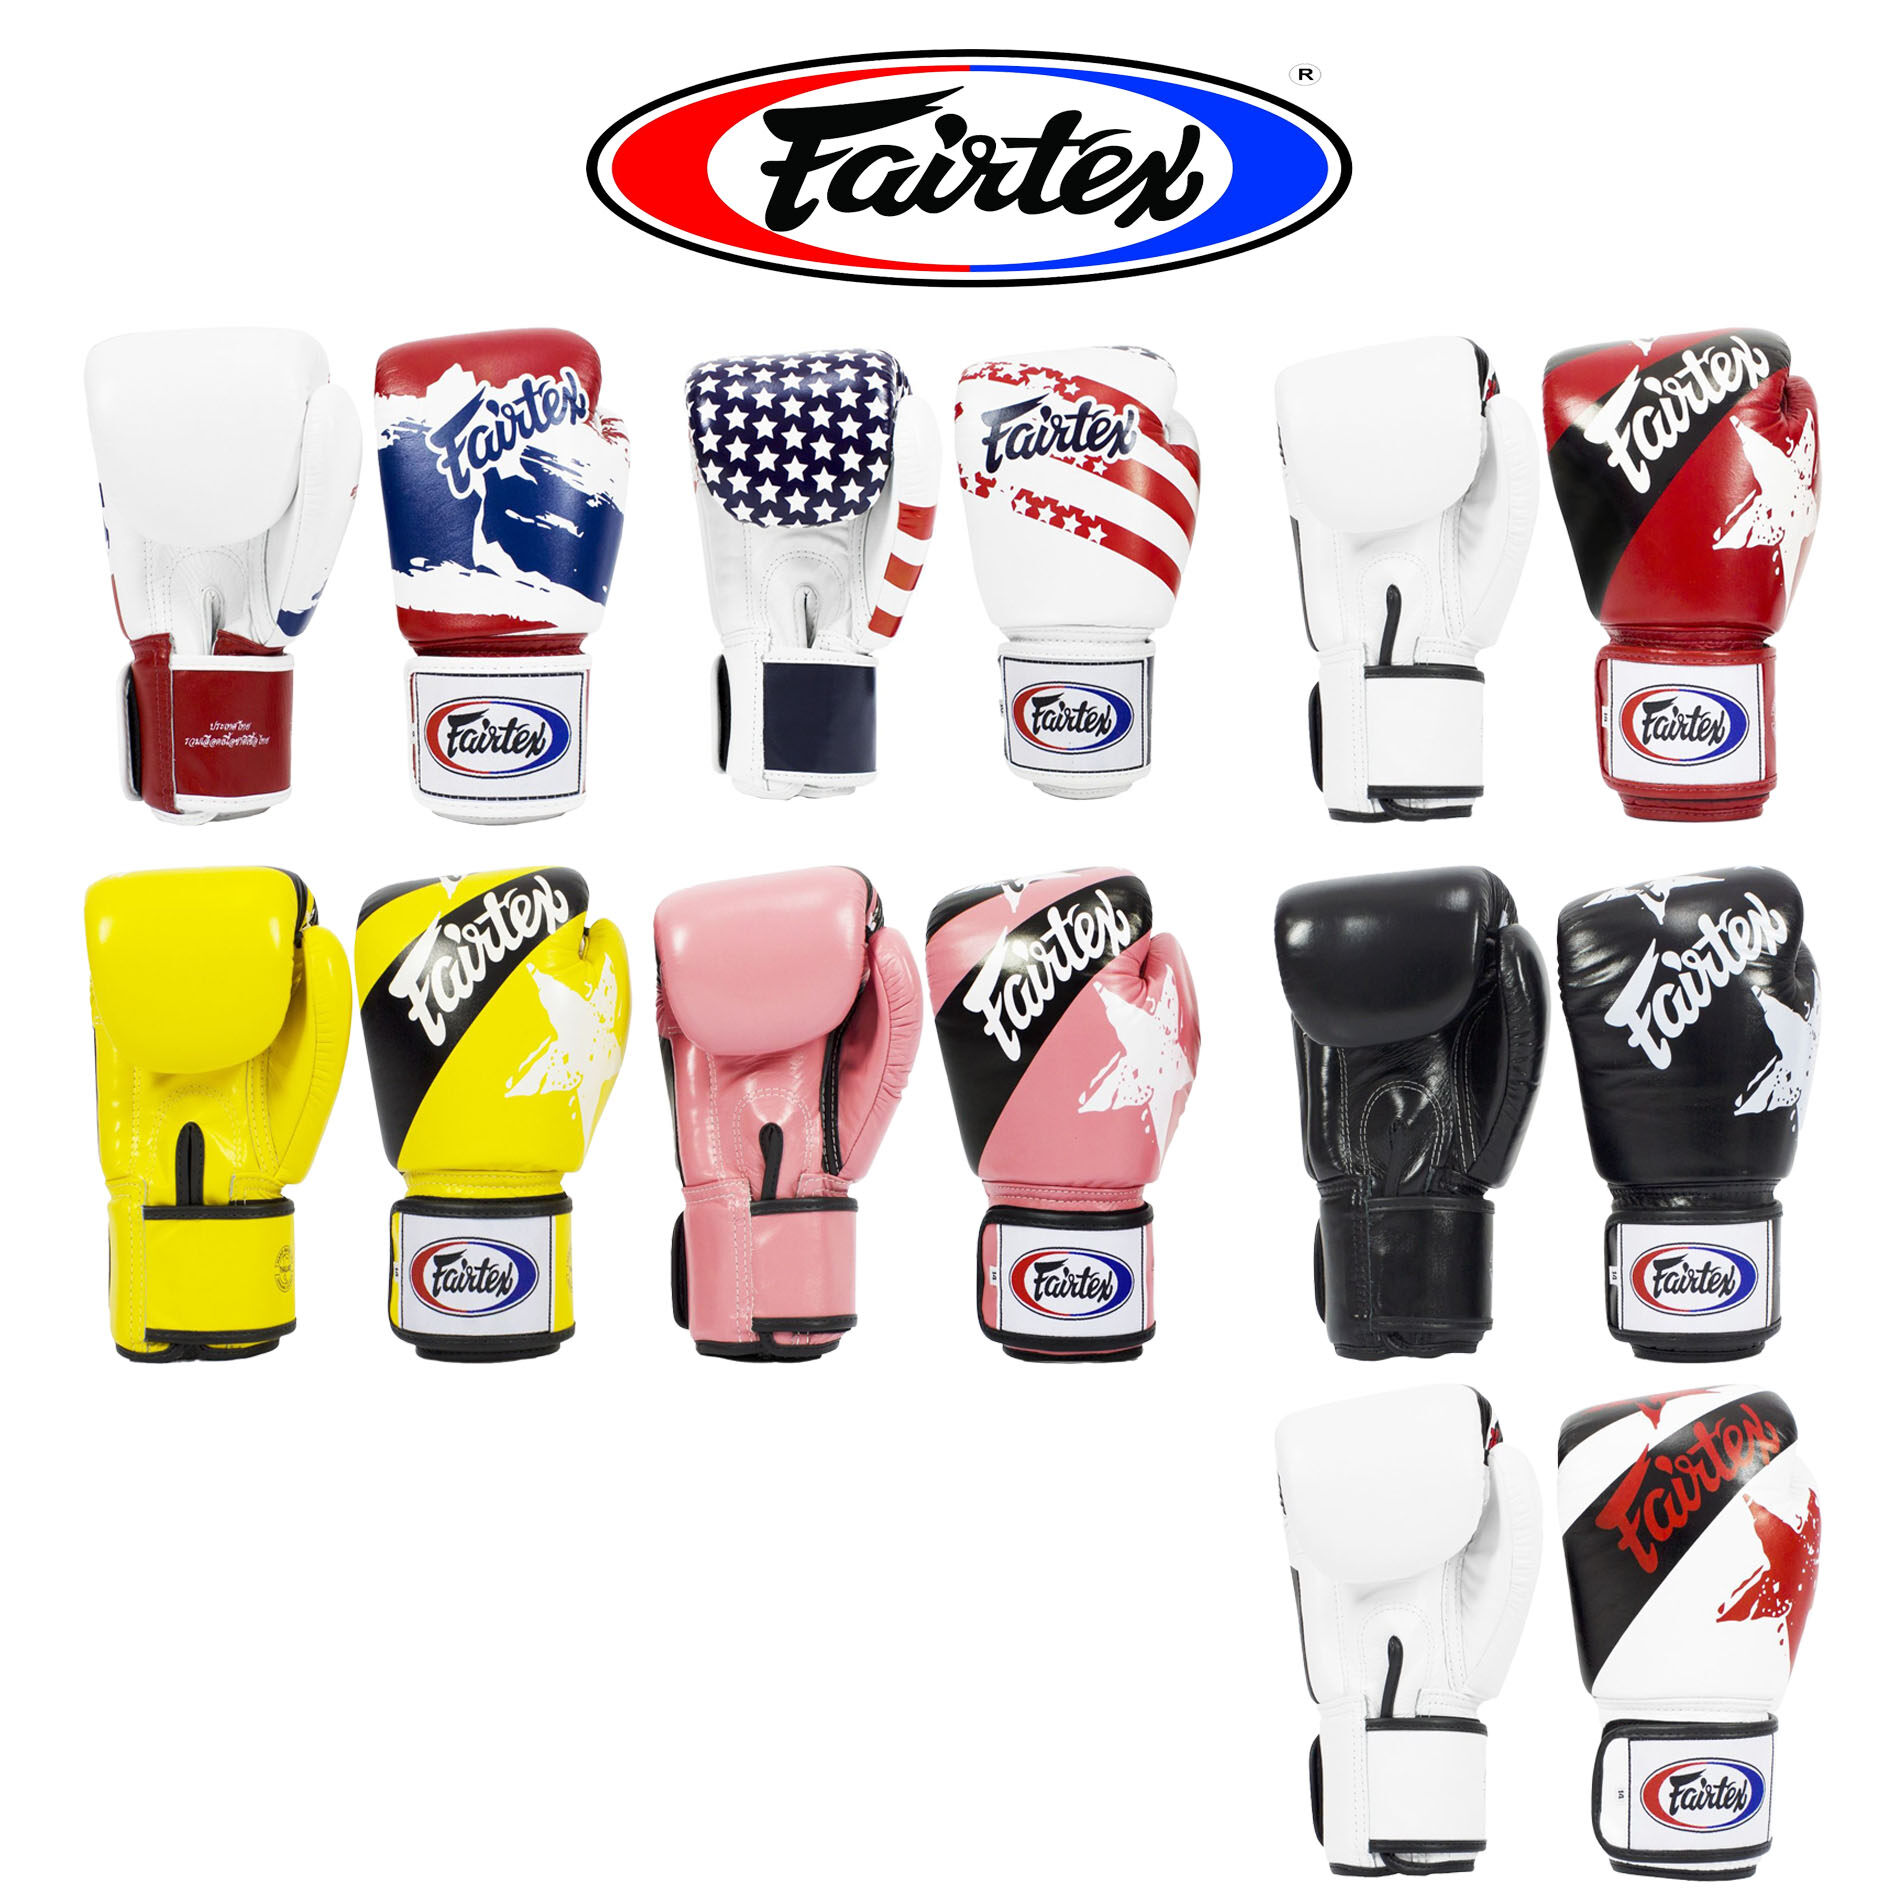 นวมชกมวย Fairtex Boxing Gloves BGV1 National Flags & Pattern ลายธงชาติ และ ลวดลาย สี ต่างๆ Size 10oz, 12 oz, 14oz, 16oz. สำหรับ ชกมวย และ ฝึกซ้อมมวย หนังแท้ พร้อม 